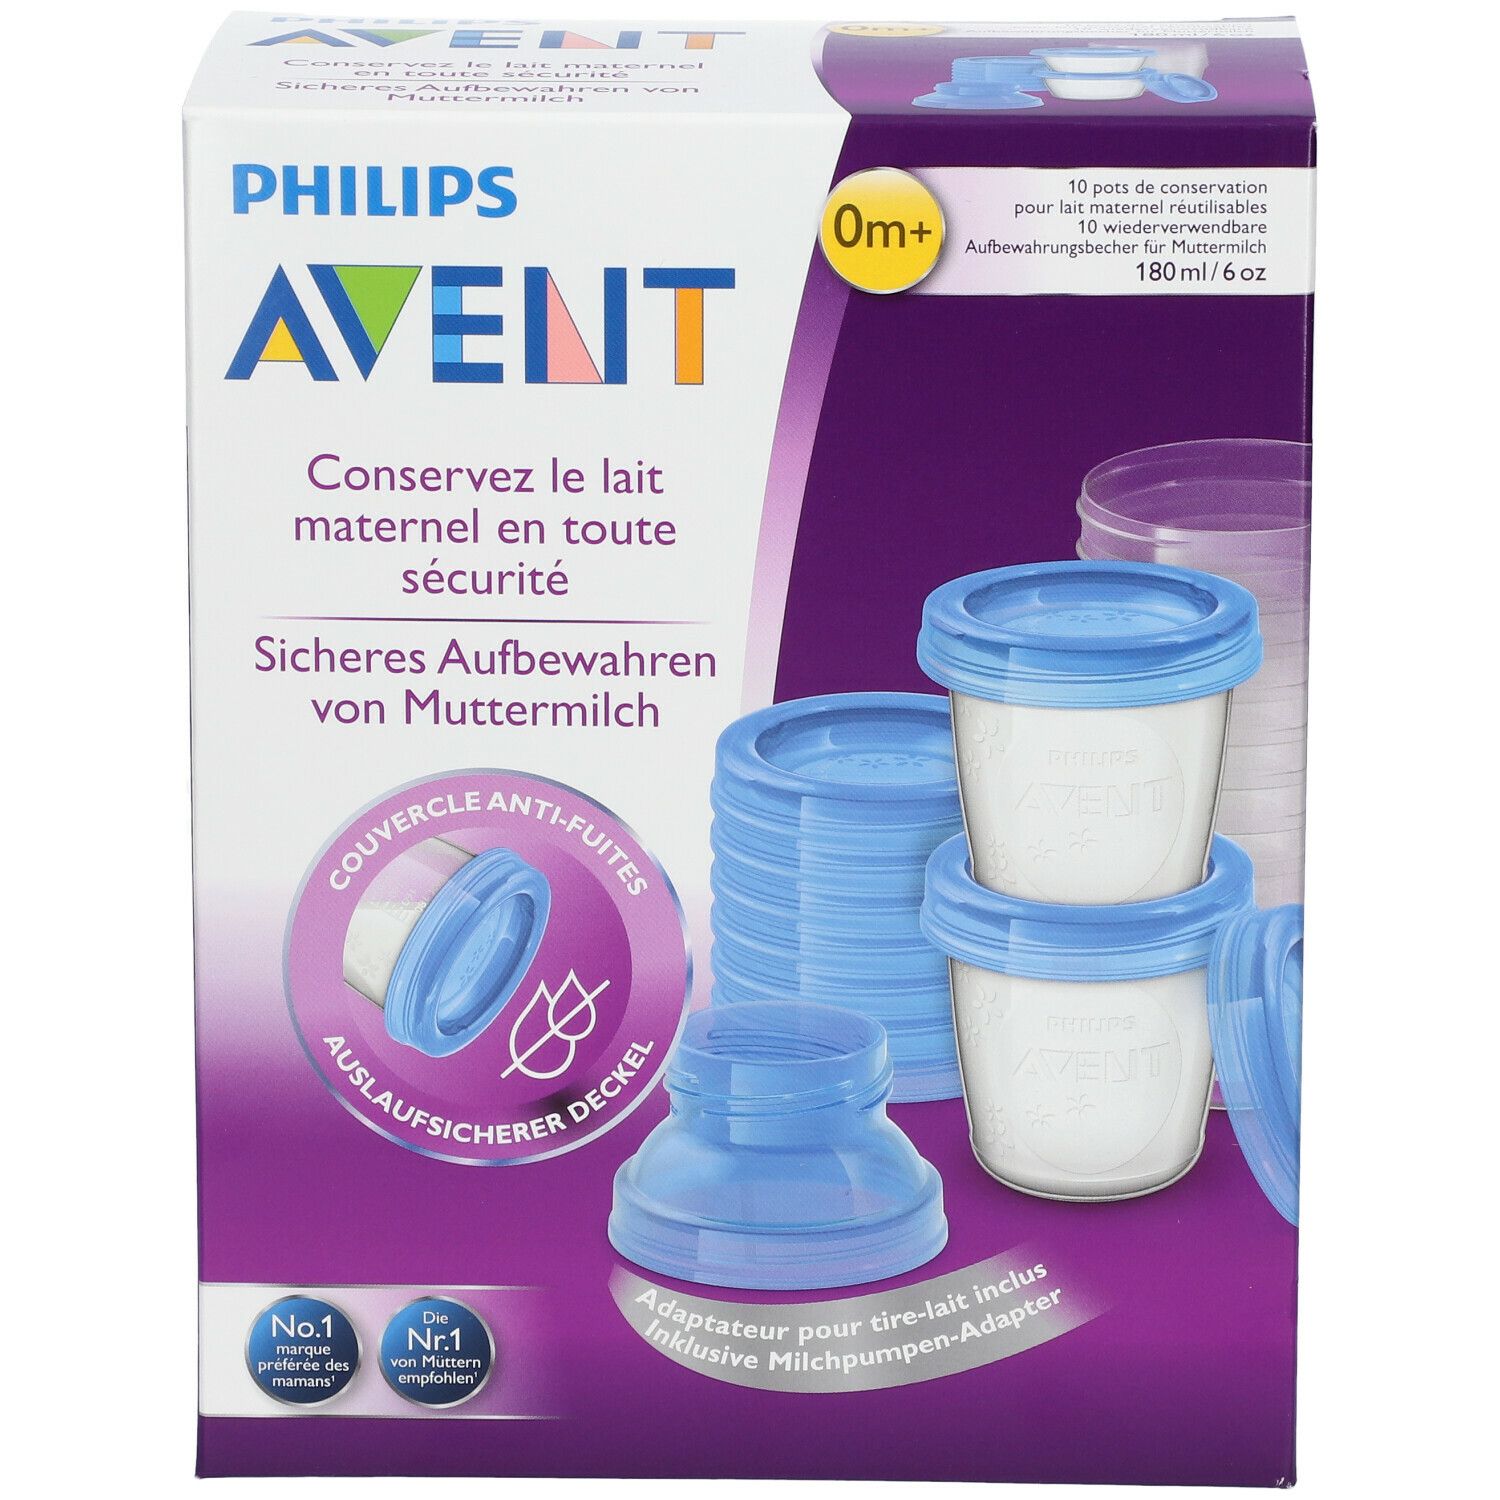 Pots de conservation lait maternel réutilisables 0 mois et + Avent